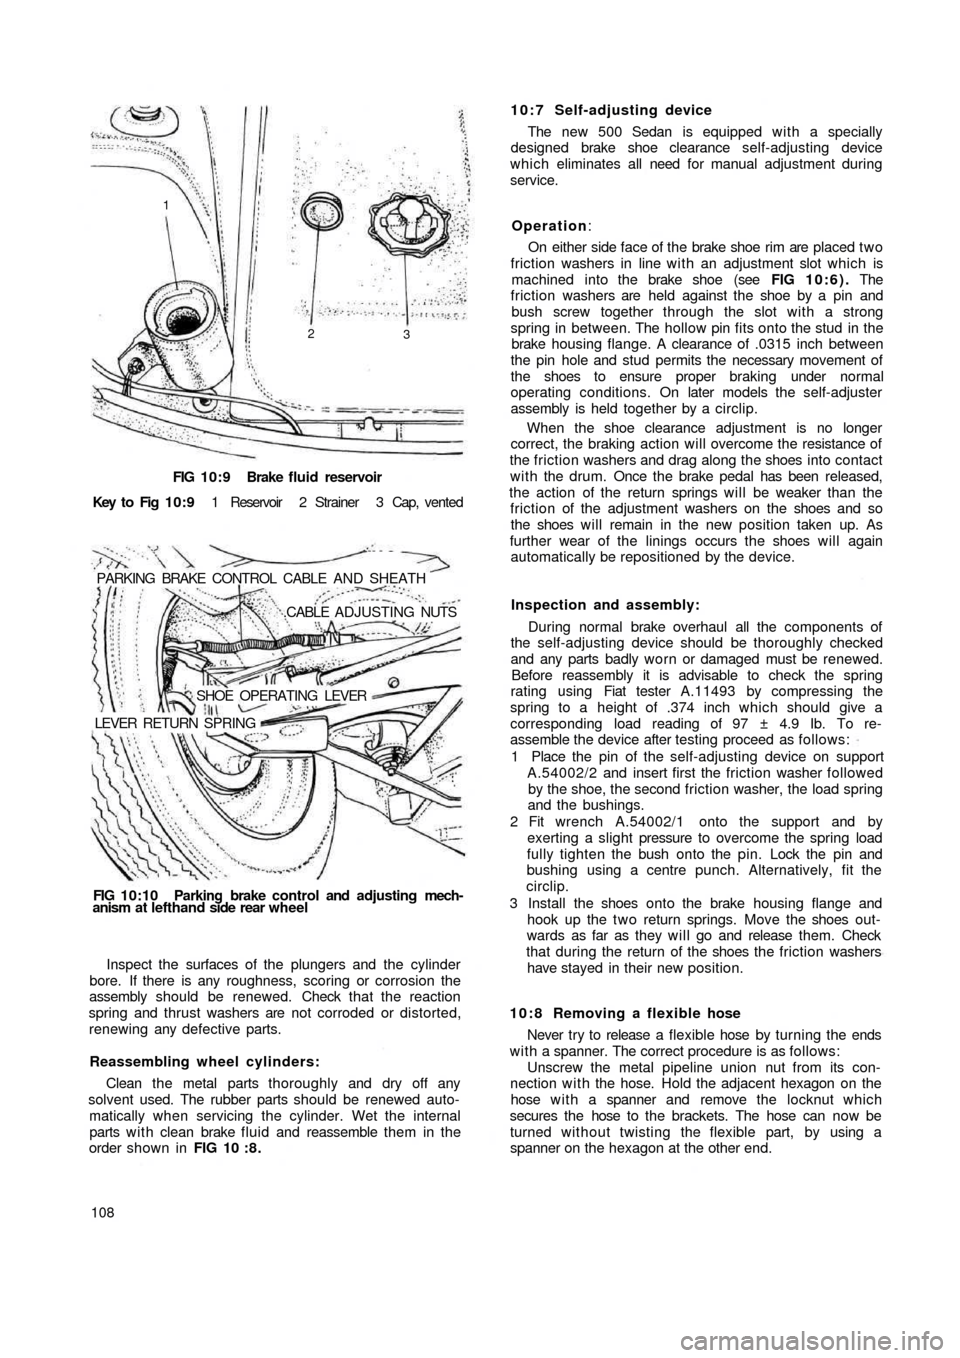 FIAT 500 1971 1.G Workshop Manual FIG 10:9 Brake  fluid reservoir
Key  to  Fig  1 0 : 9 1  Reservoir  2  Strainer  3  Cap,  vented
PARKING  BRAKE  CONTROL  CABLE  AND  SHEATH
.CABLE  ADJUSTING NUTS
SHOE  OPERATING  LEVER
LEVER  RETURN